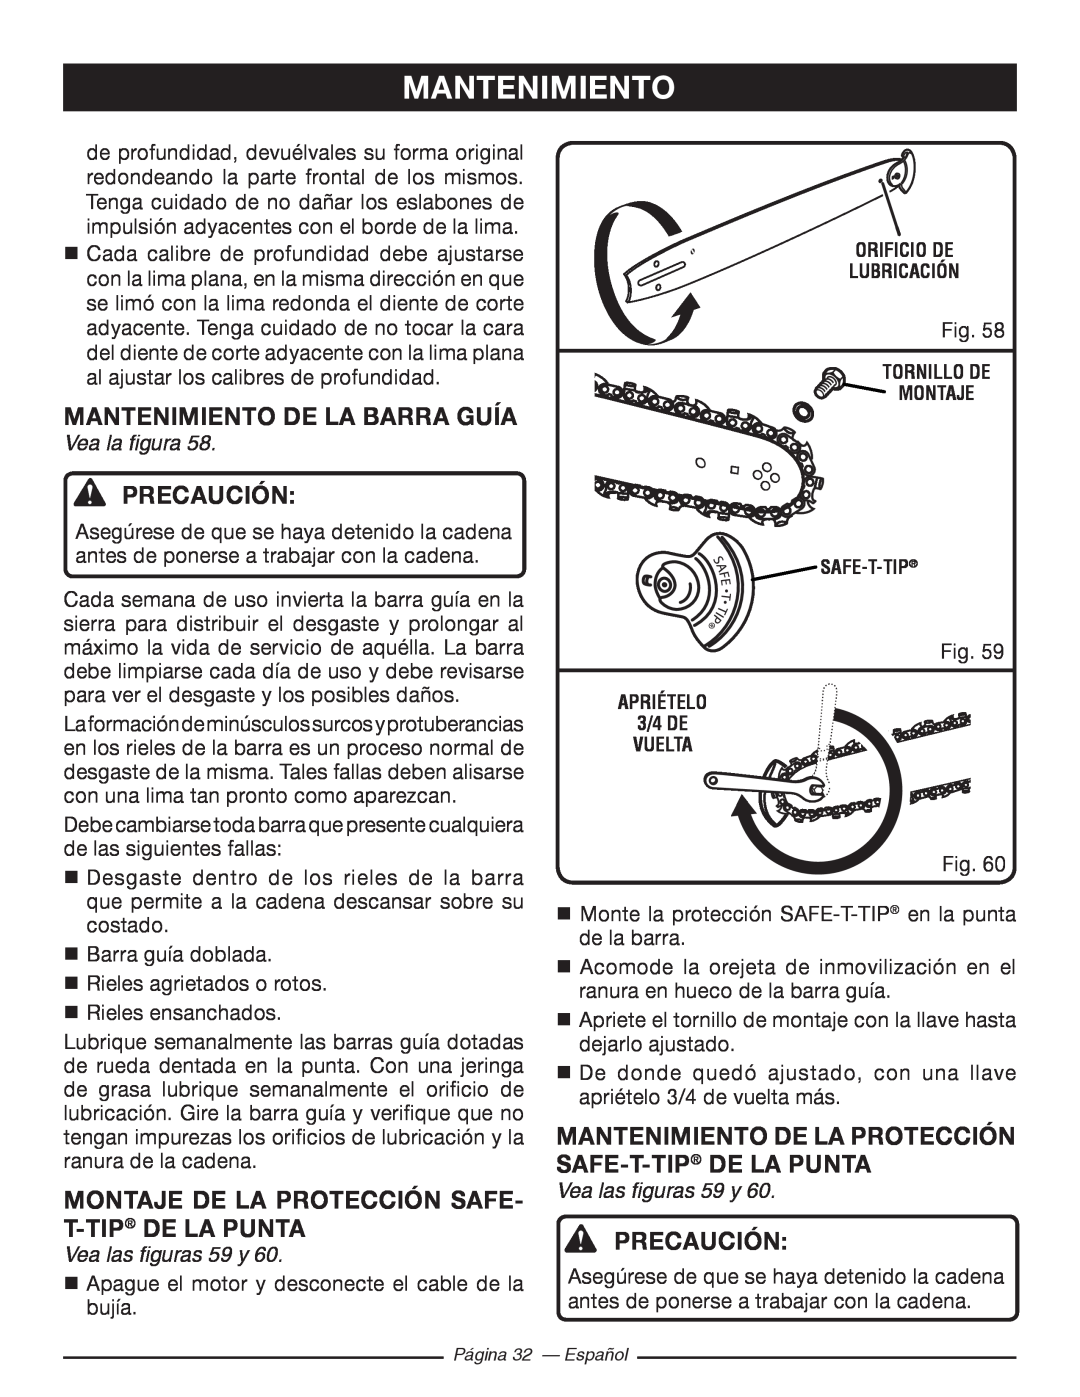 Ryobi RY10520 Mantenimiento De La Barra Guía, Montaje De La Protección Safe- T-Tip De La Punta, Vea las figuras 59 y 